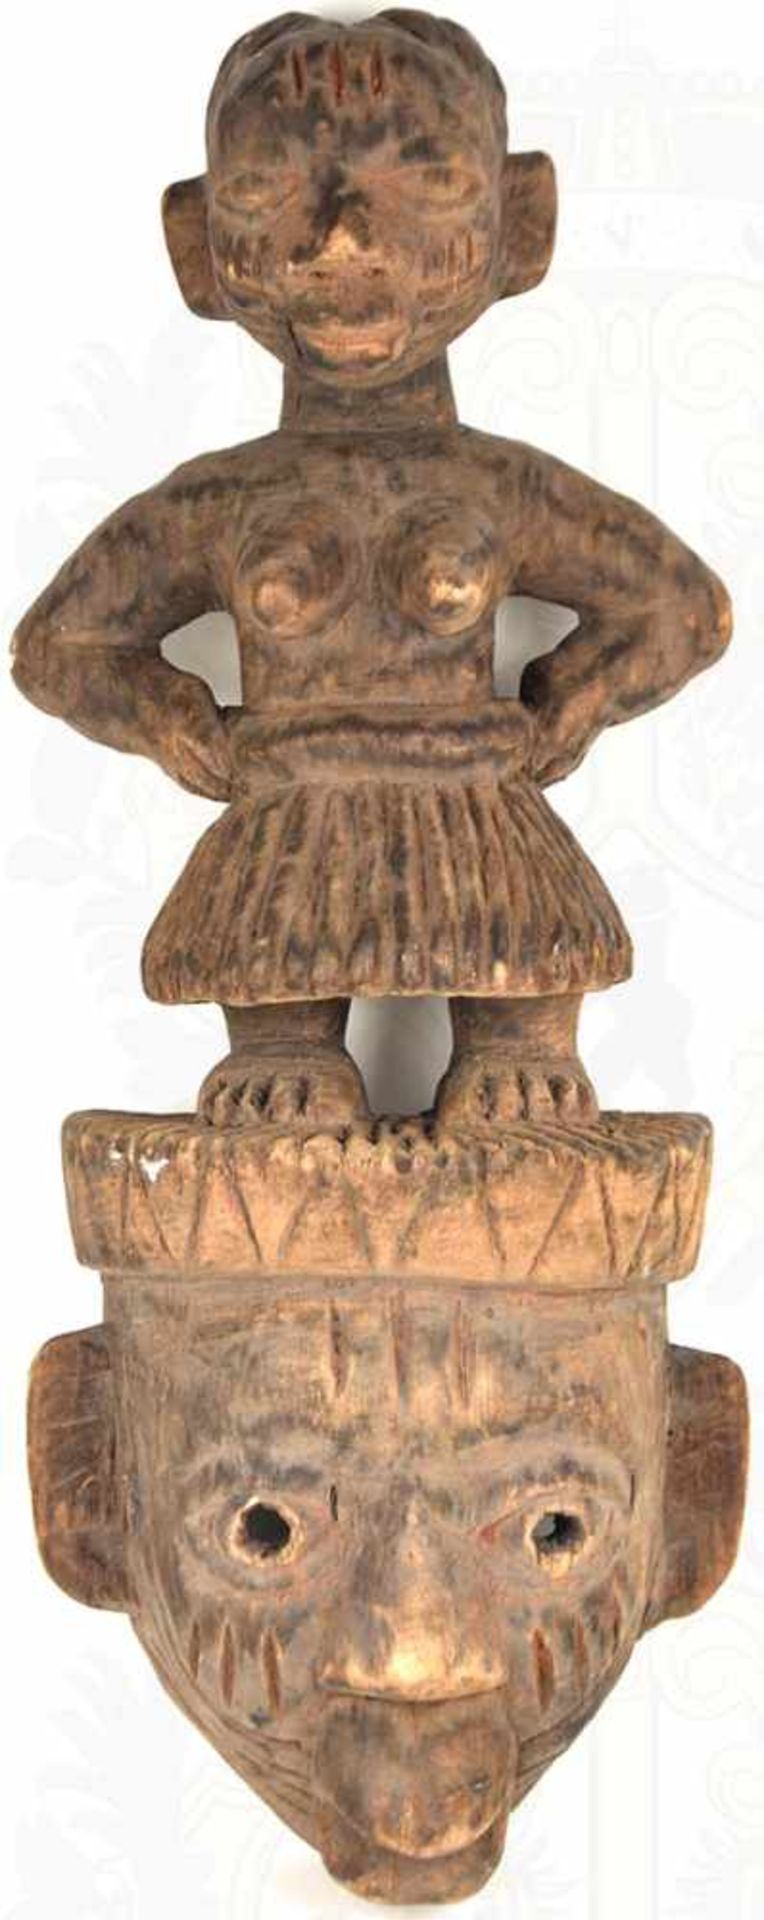 AFRIKANISCHE KULT-SKULPTUR, Holz, Frau mit Bastschurz und entblößter Brust auf e. Gesichtsmaske